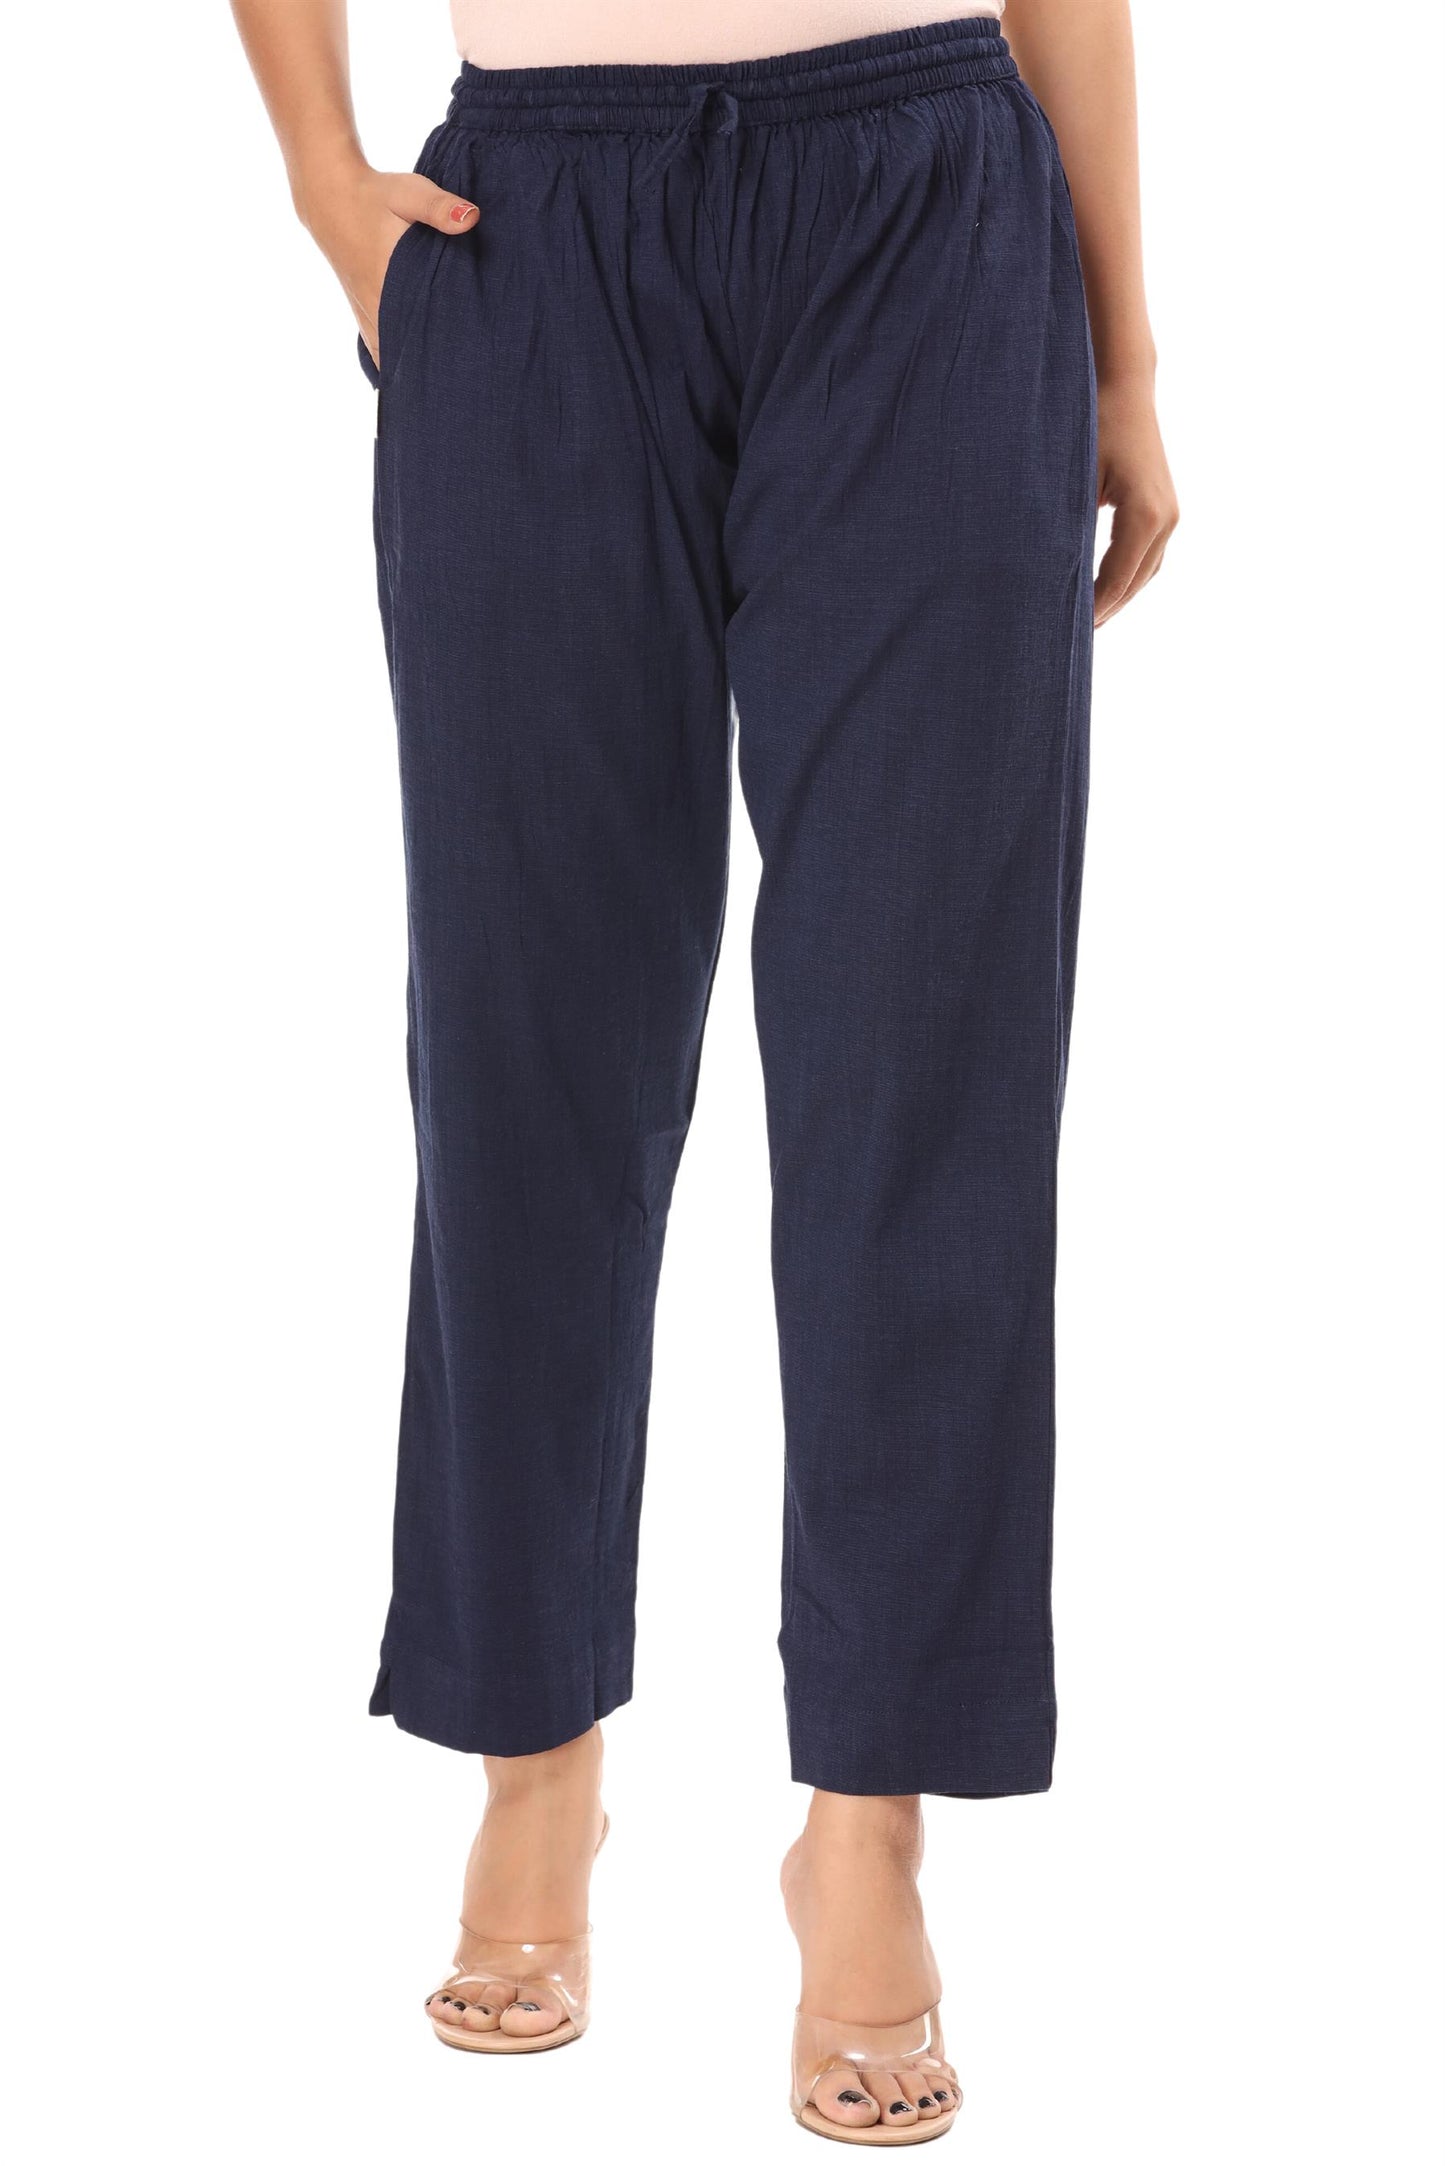 2-way stretch Navy Blue Cotton Lycra Pants